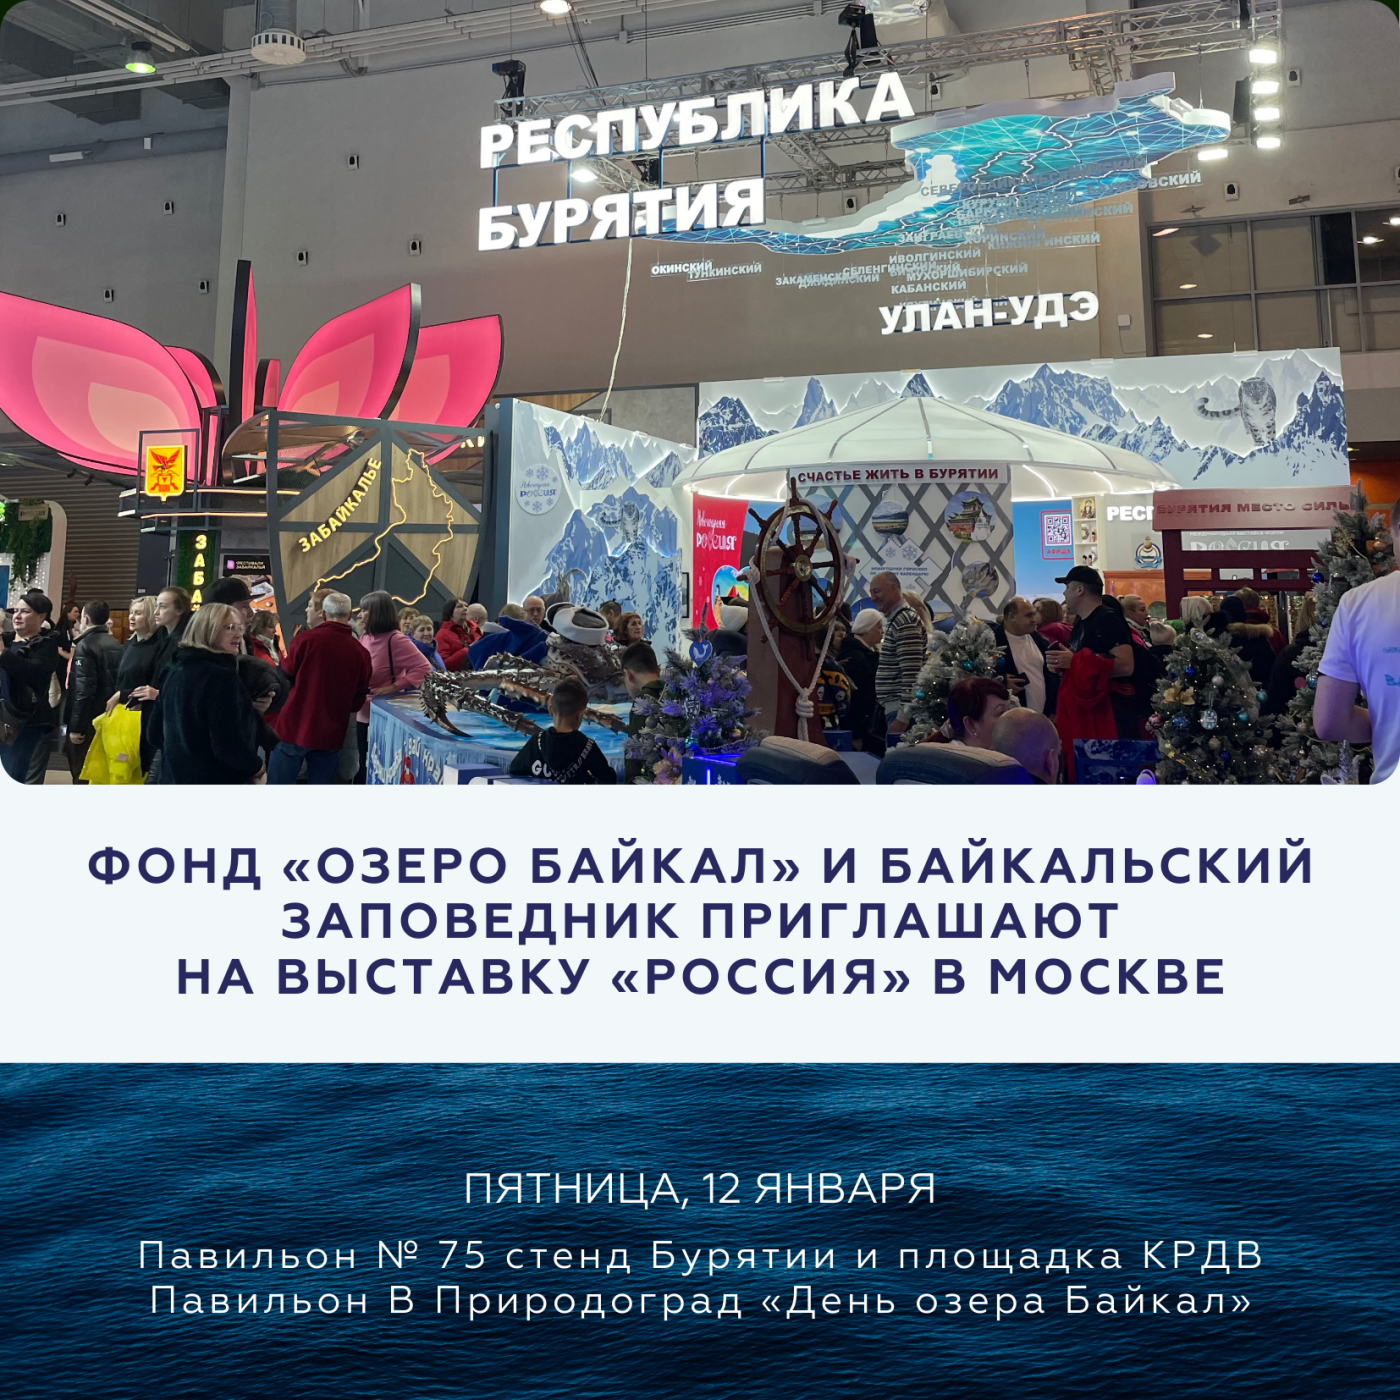 Фонд «Озеро Байкал» и Байкальский Заповедник приглашают любителей байкальской природы на Выставку «Россия» в Москве на ВДНХ